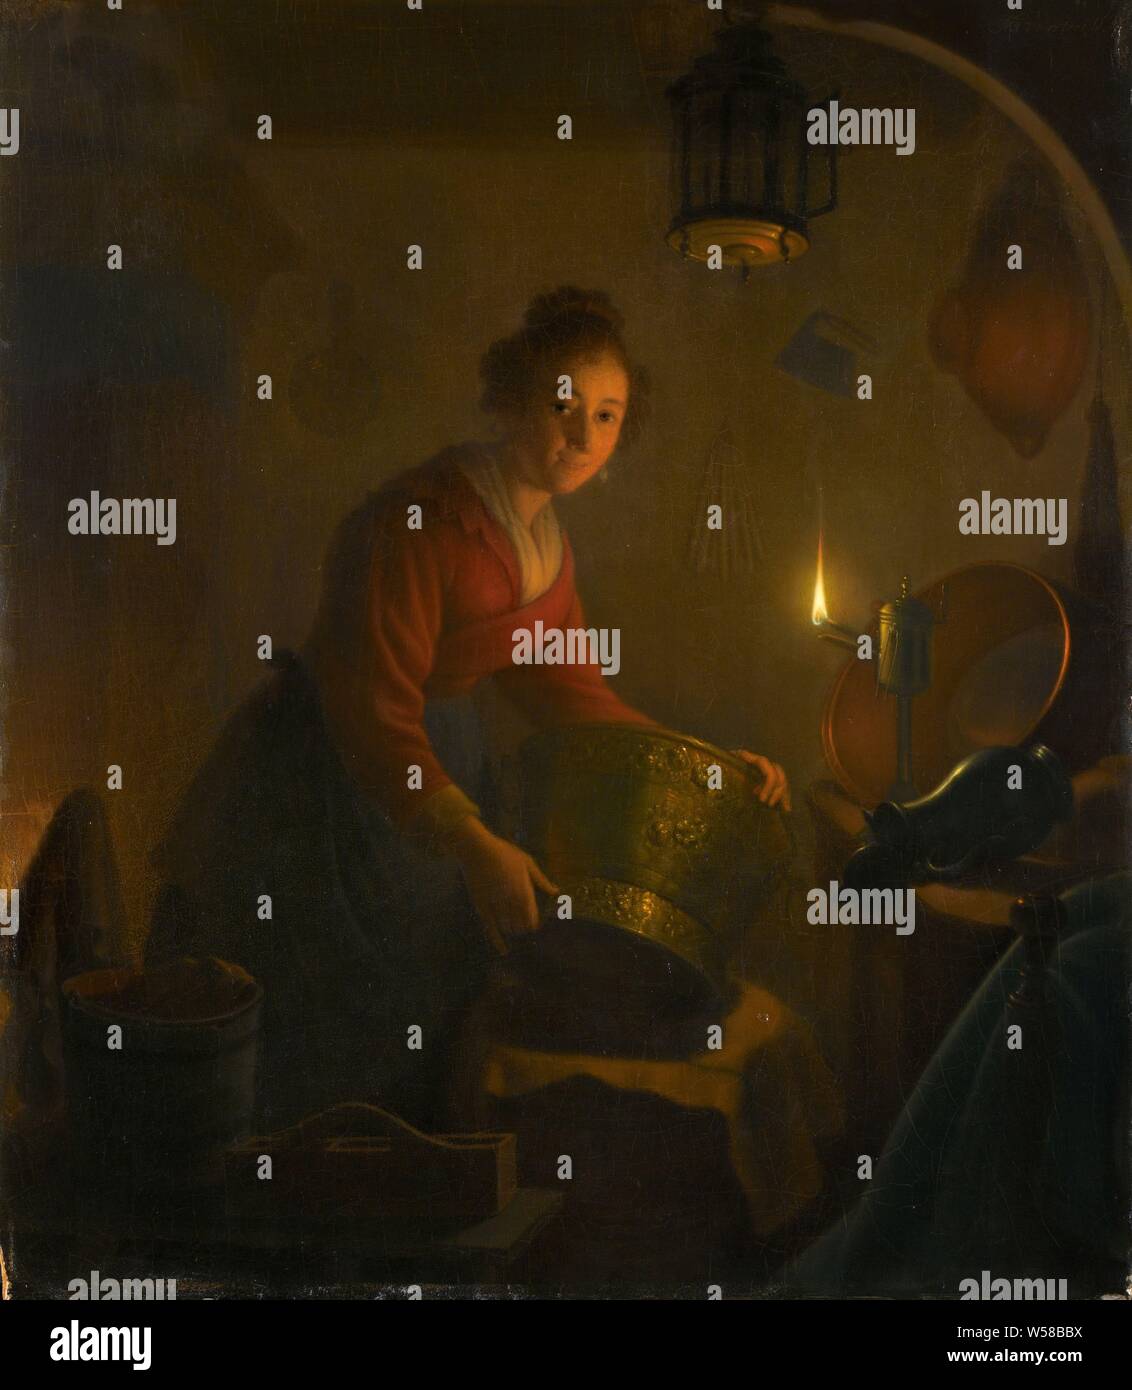 Une femme dans une cuisine aux chandelles, une femme dans une cuisine à la lumière d'une lampe à huile. Une bonne assure le ponçage et bouilloires casseroles de cuivre par la lumière de la lampe à pétrole., Michiel Versteegh, ch. 1830, tableau de bord, de la peinture à l'huile (peinture), peinture, H 49 cm × w 43 cm d 11,5 cm Banque D'Images